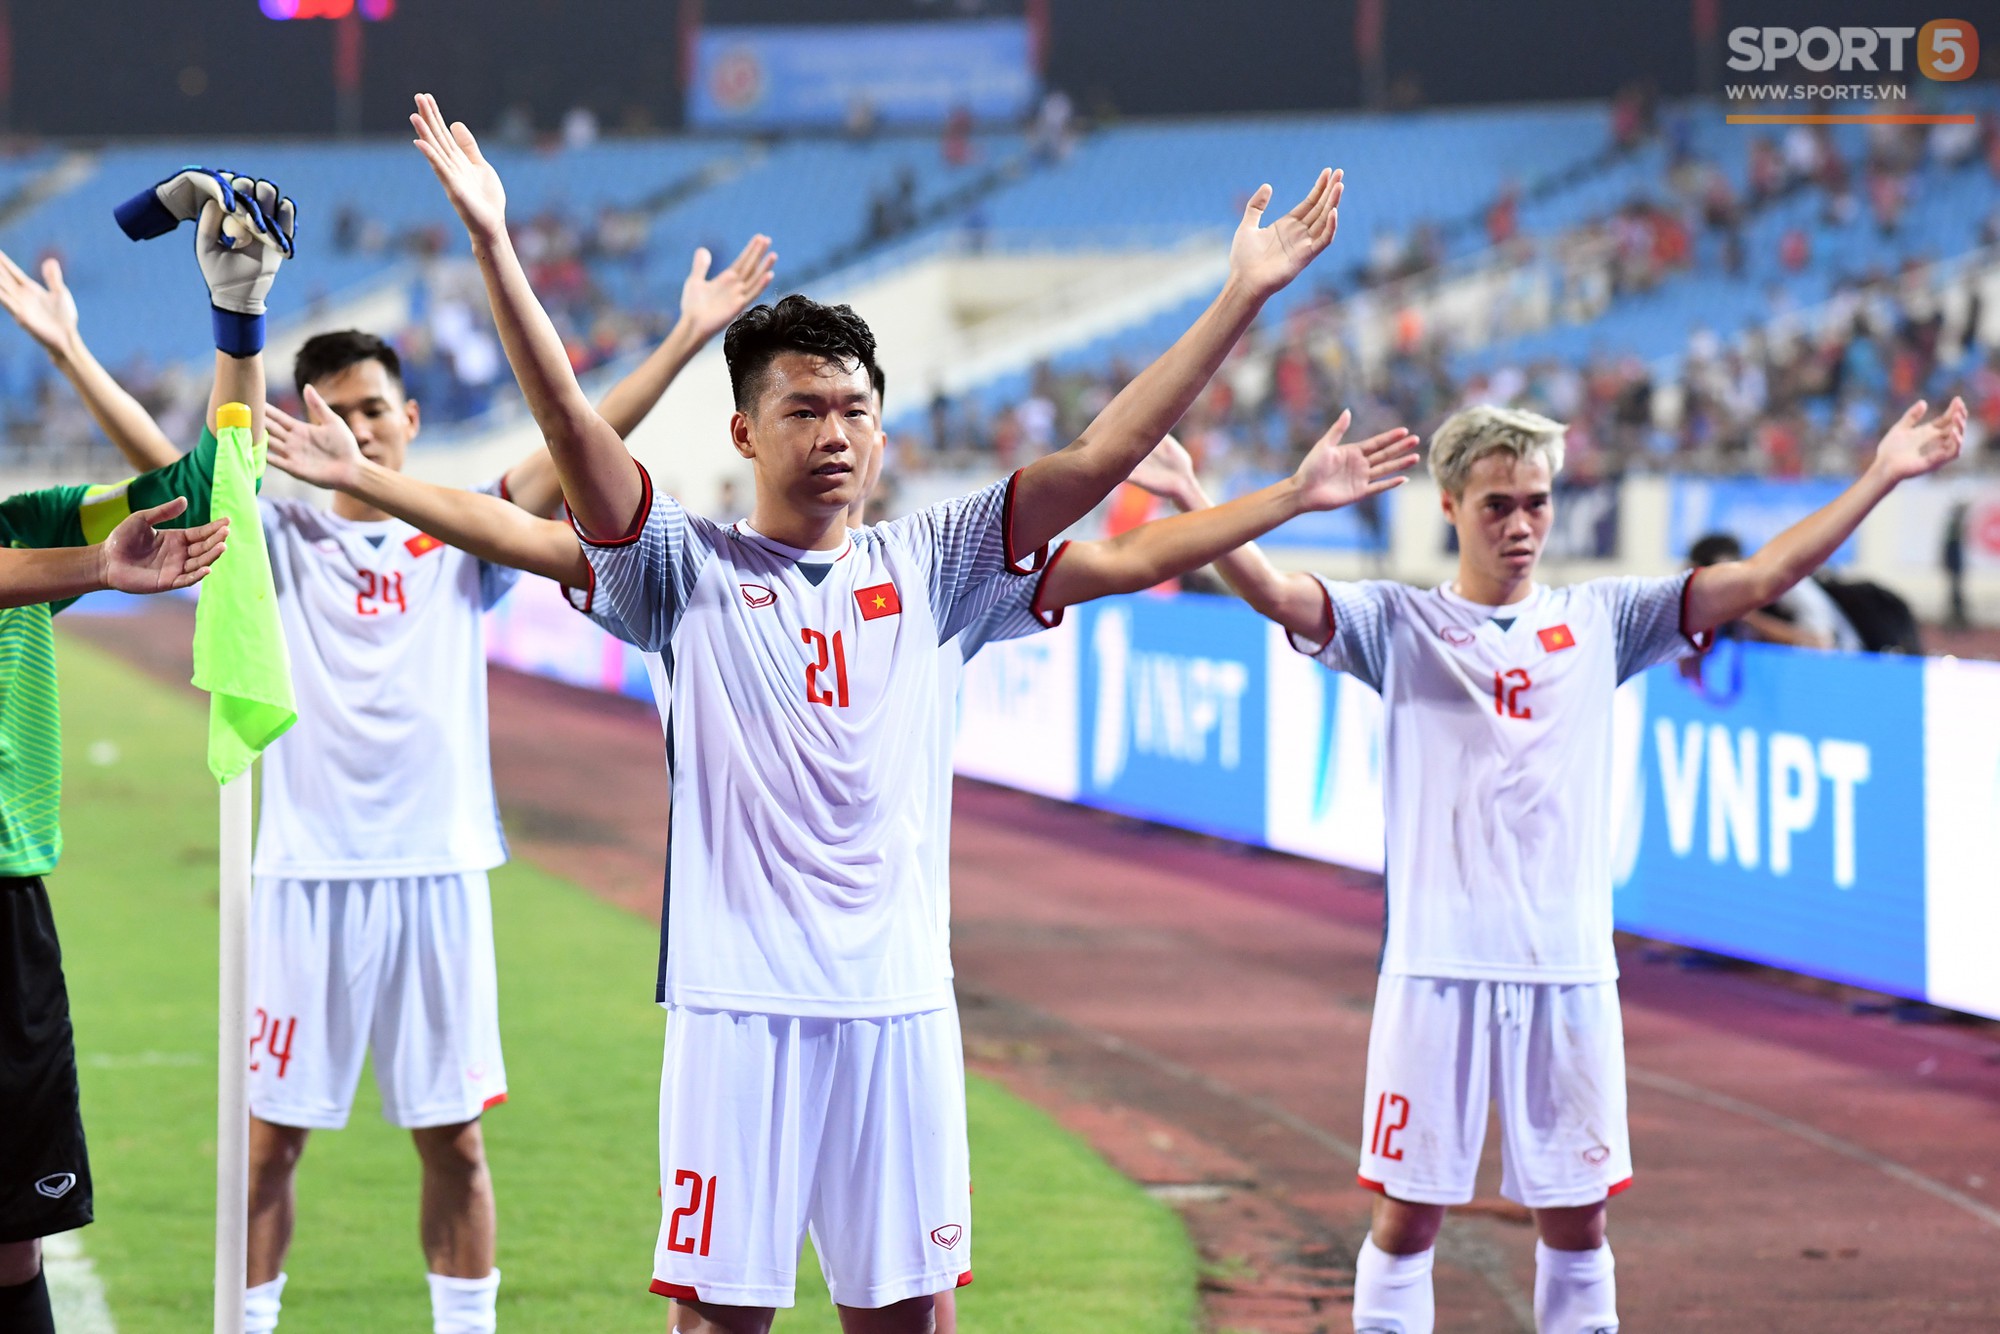 Cầu thủ U23 Việt Nam cảm ơn khán giả sau khi vô địch sớm Cup Tứ Hùng - Ảnh 6.